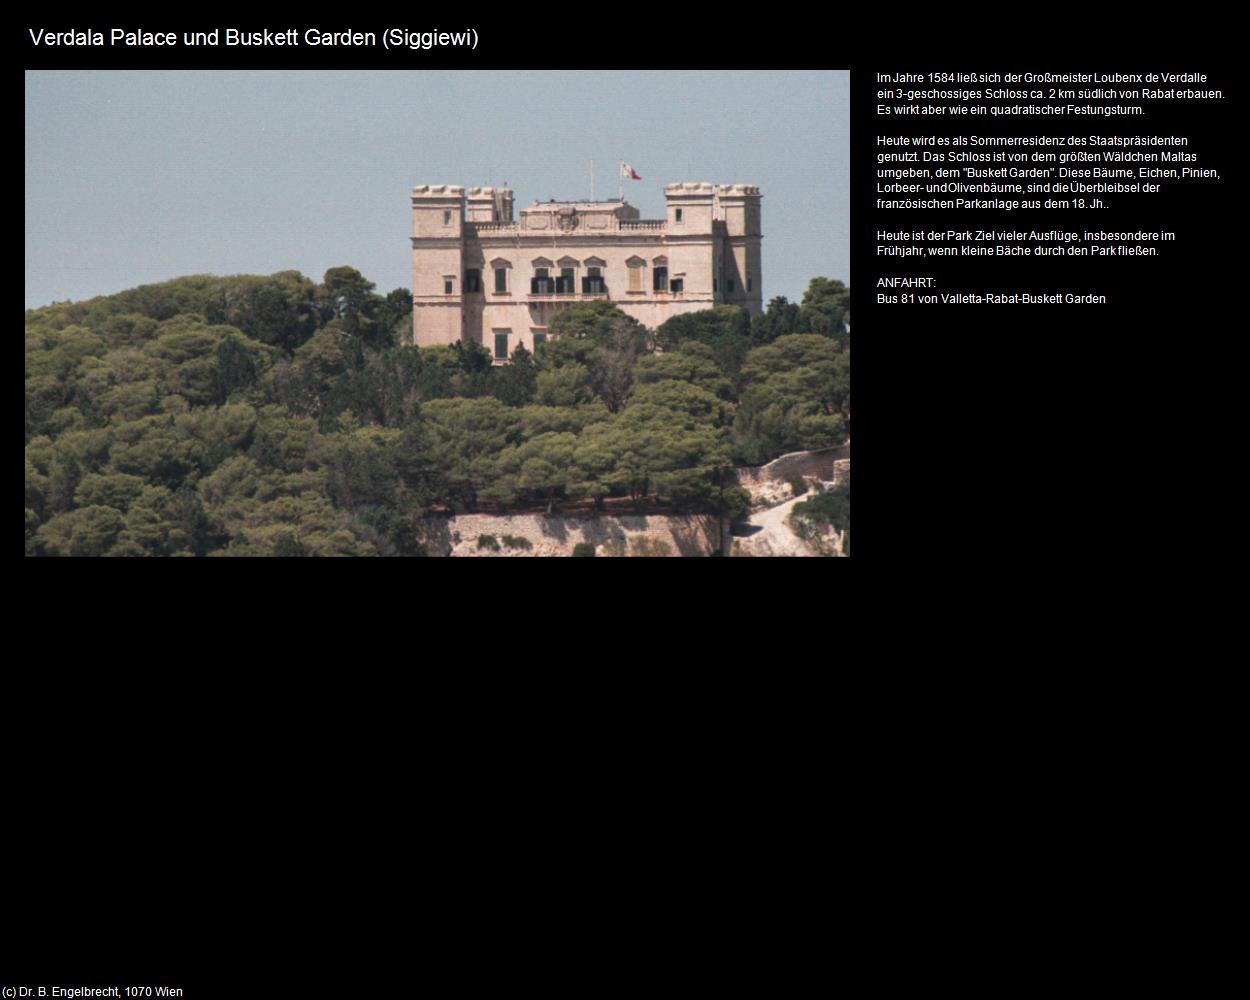 Verdala Palace und Buskett Garden (Siggiewi ) in Malta - Perle im Mittelmeer